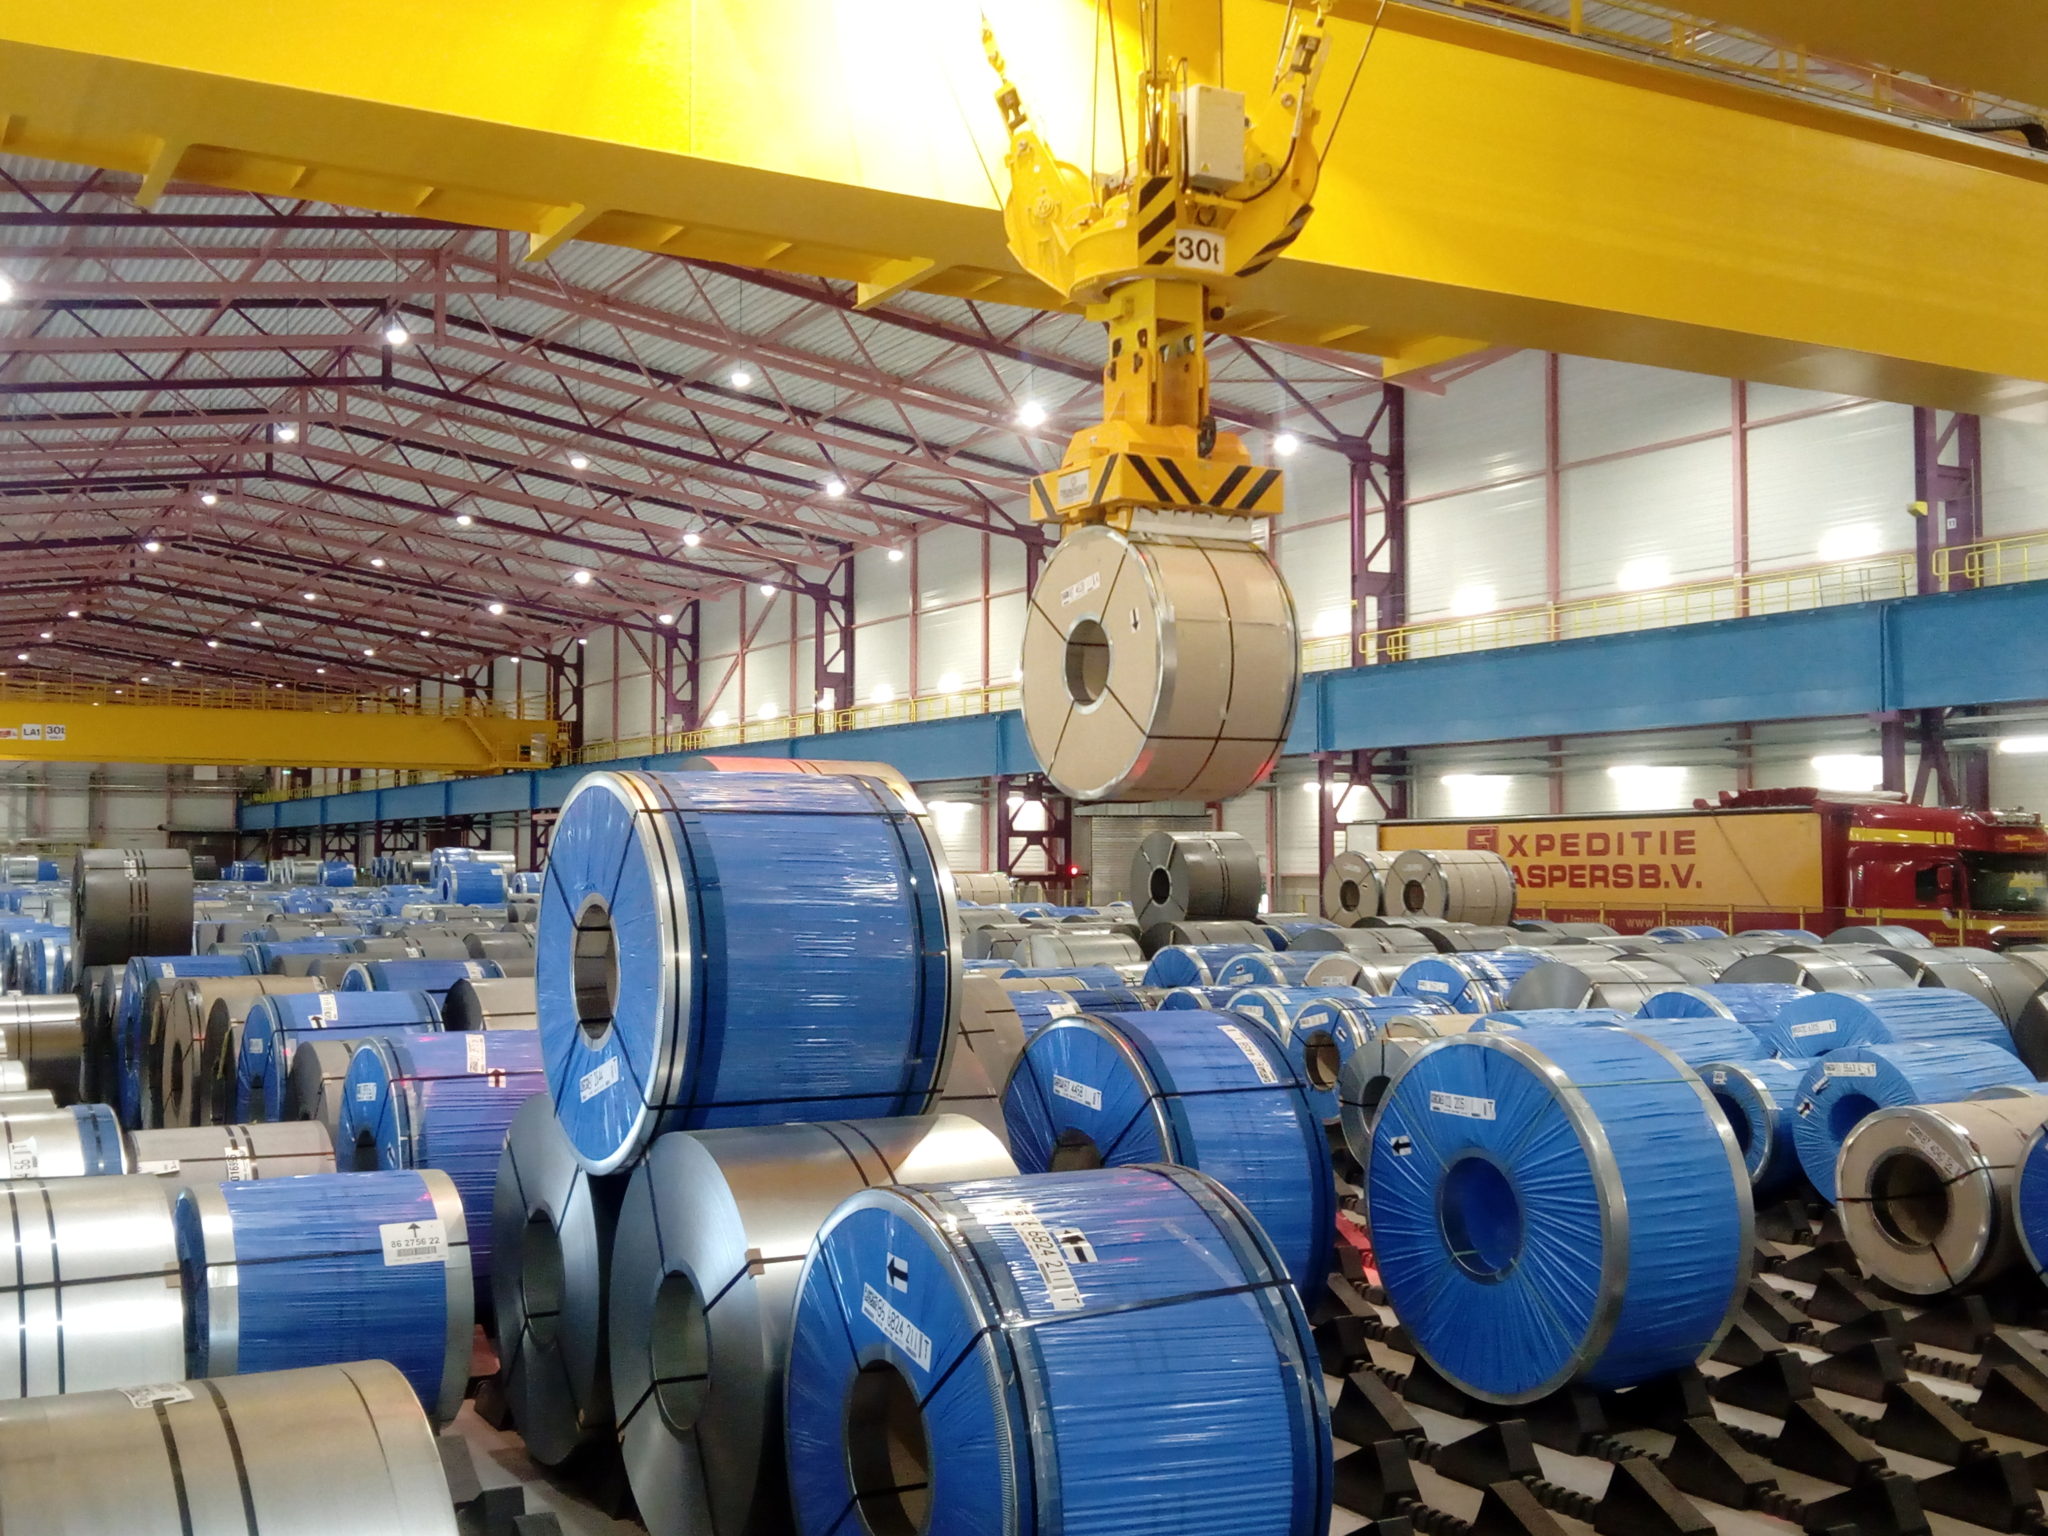 Tata Steel neemt nieuwe ultramoderne opslaghal in gebruik ...